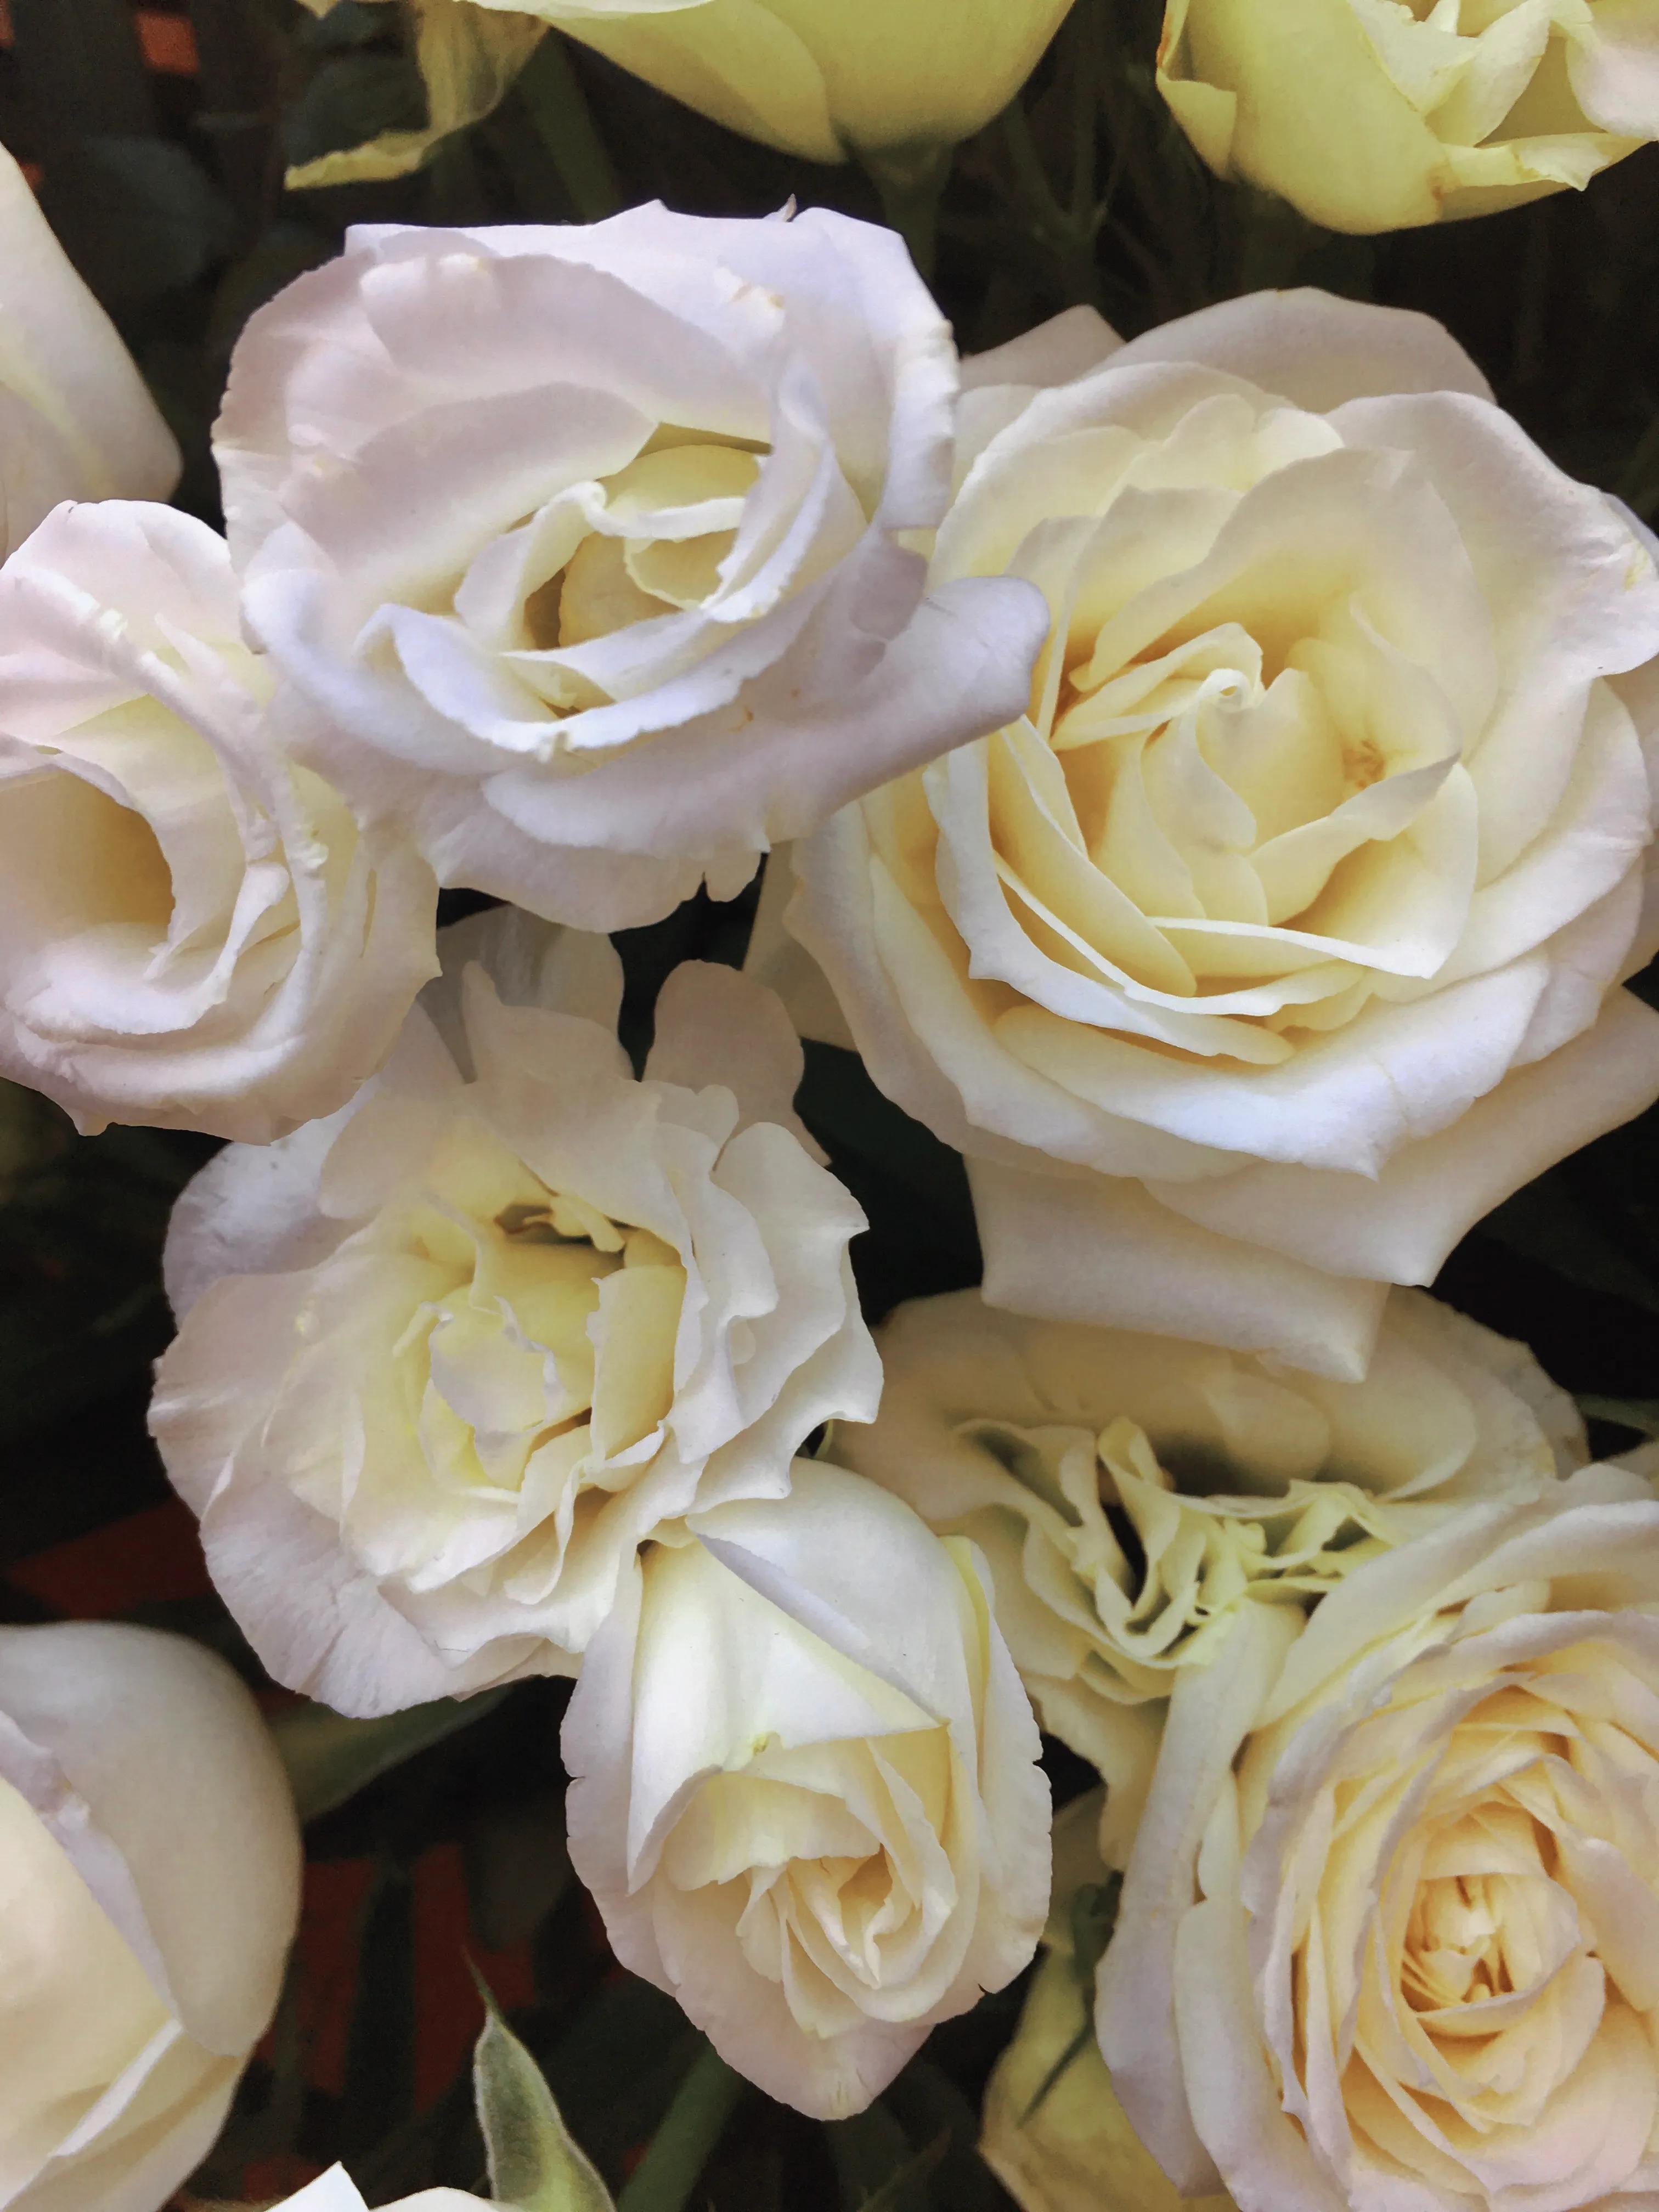 白玫瑰花语——纯洁,浪漫,求爱之花,以及我足以与你相配